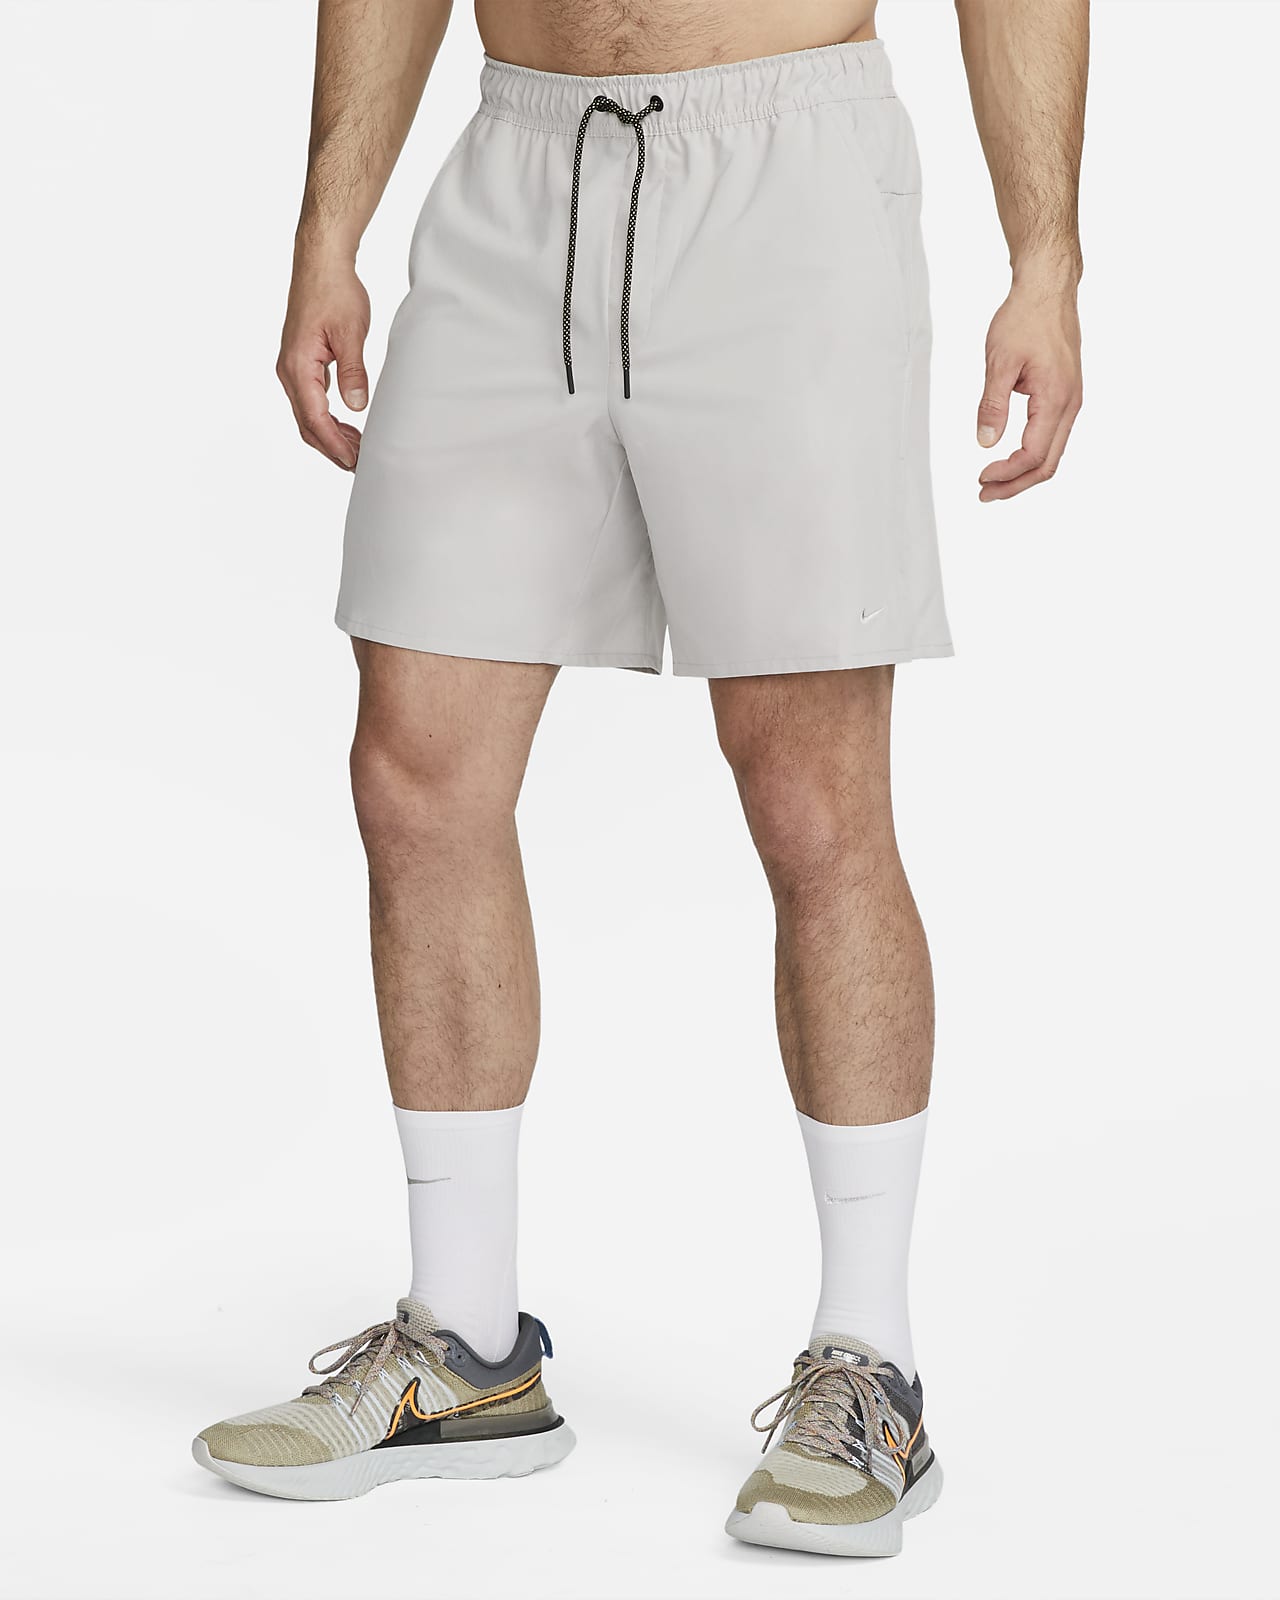 Nike Dri-FIT Unlimited D.Y.E. Men's 7" Unlined Versatile Shorts